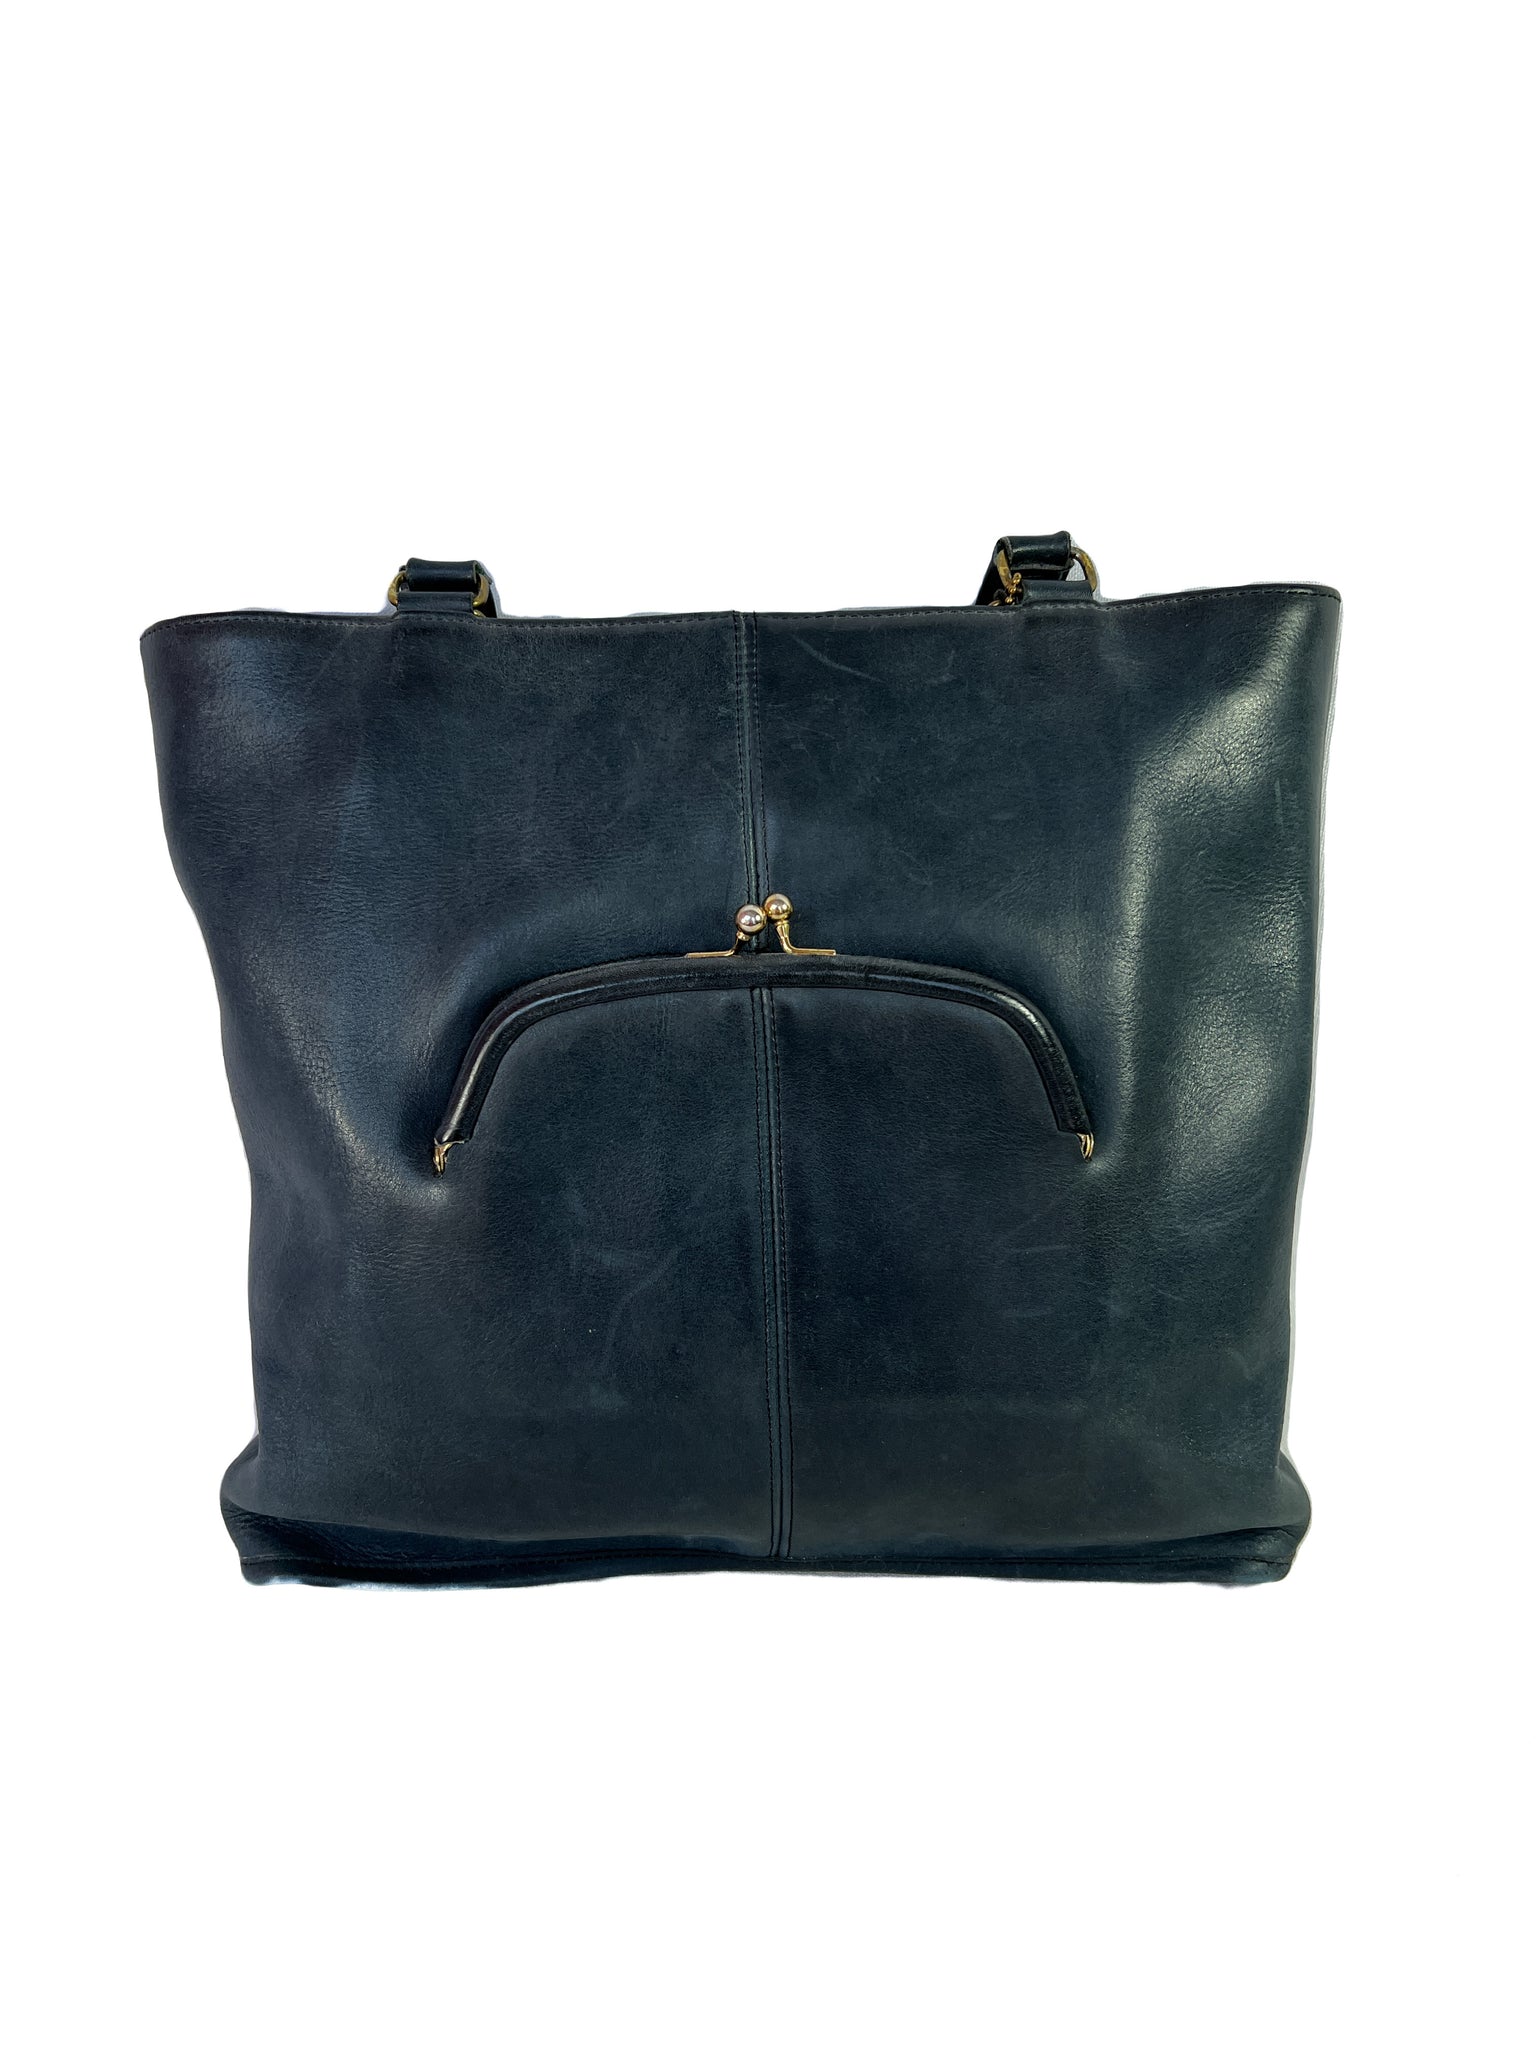 Vintage COACH Kisslock Shoulder Bag - Navy